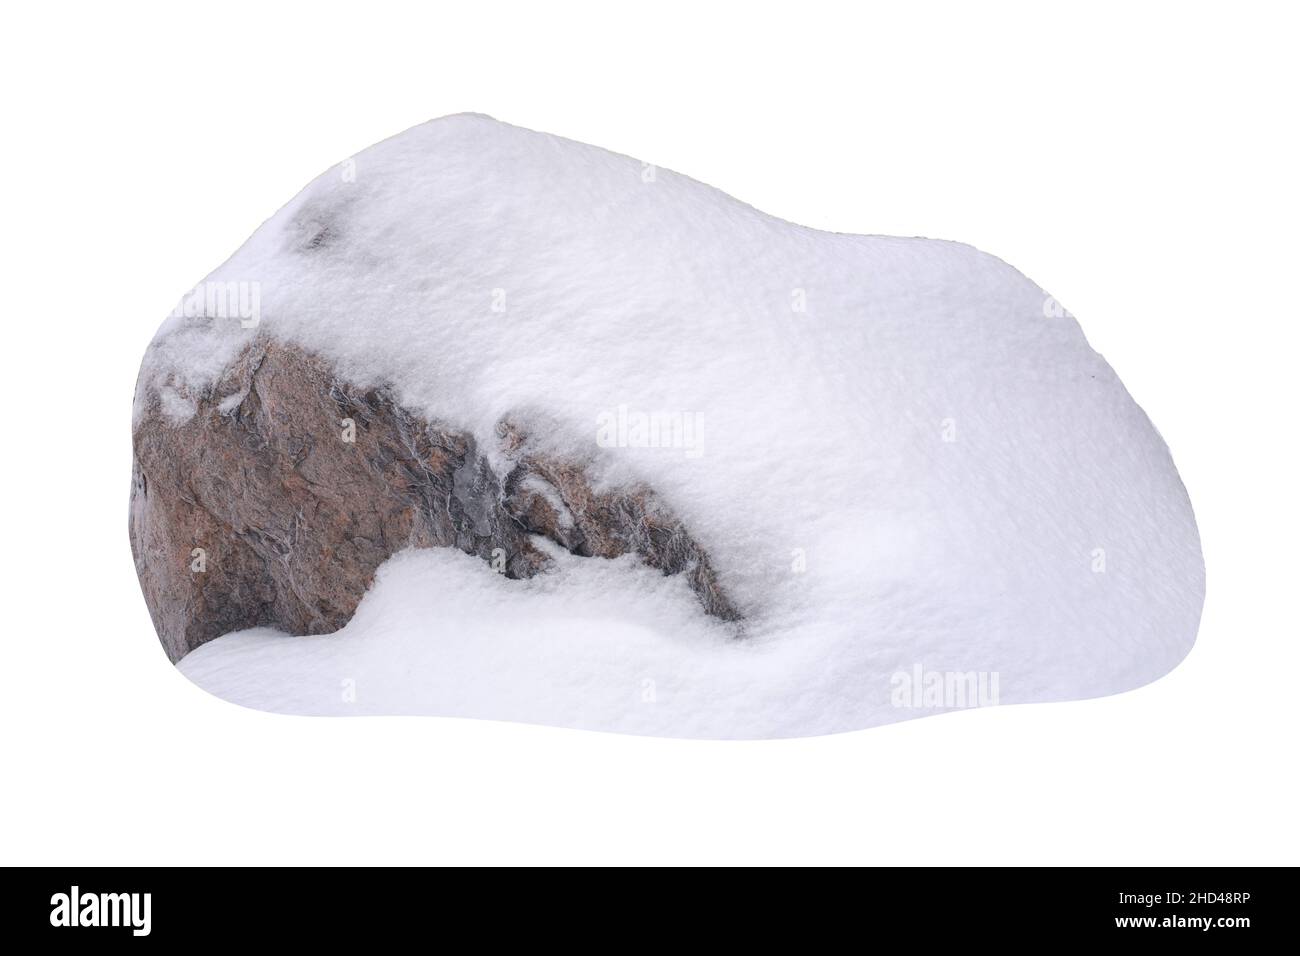 pierre naturelle dans la neige isolée sur fond blanc.Photo de haute qualité Banque D'Images